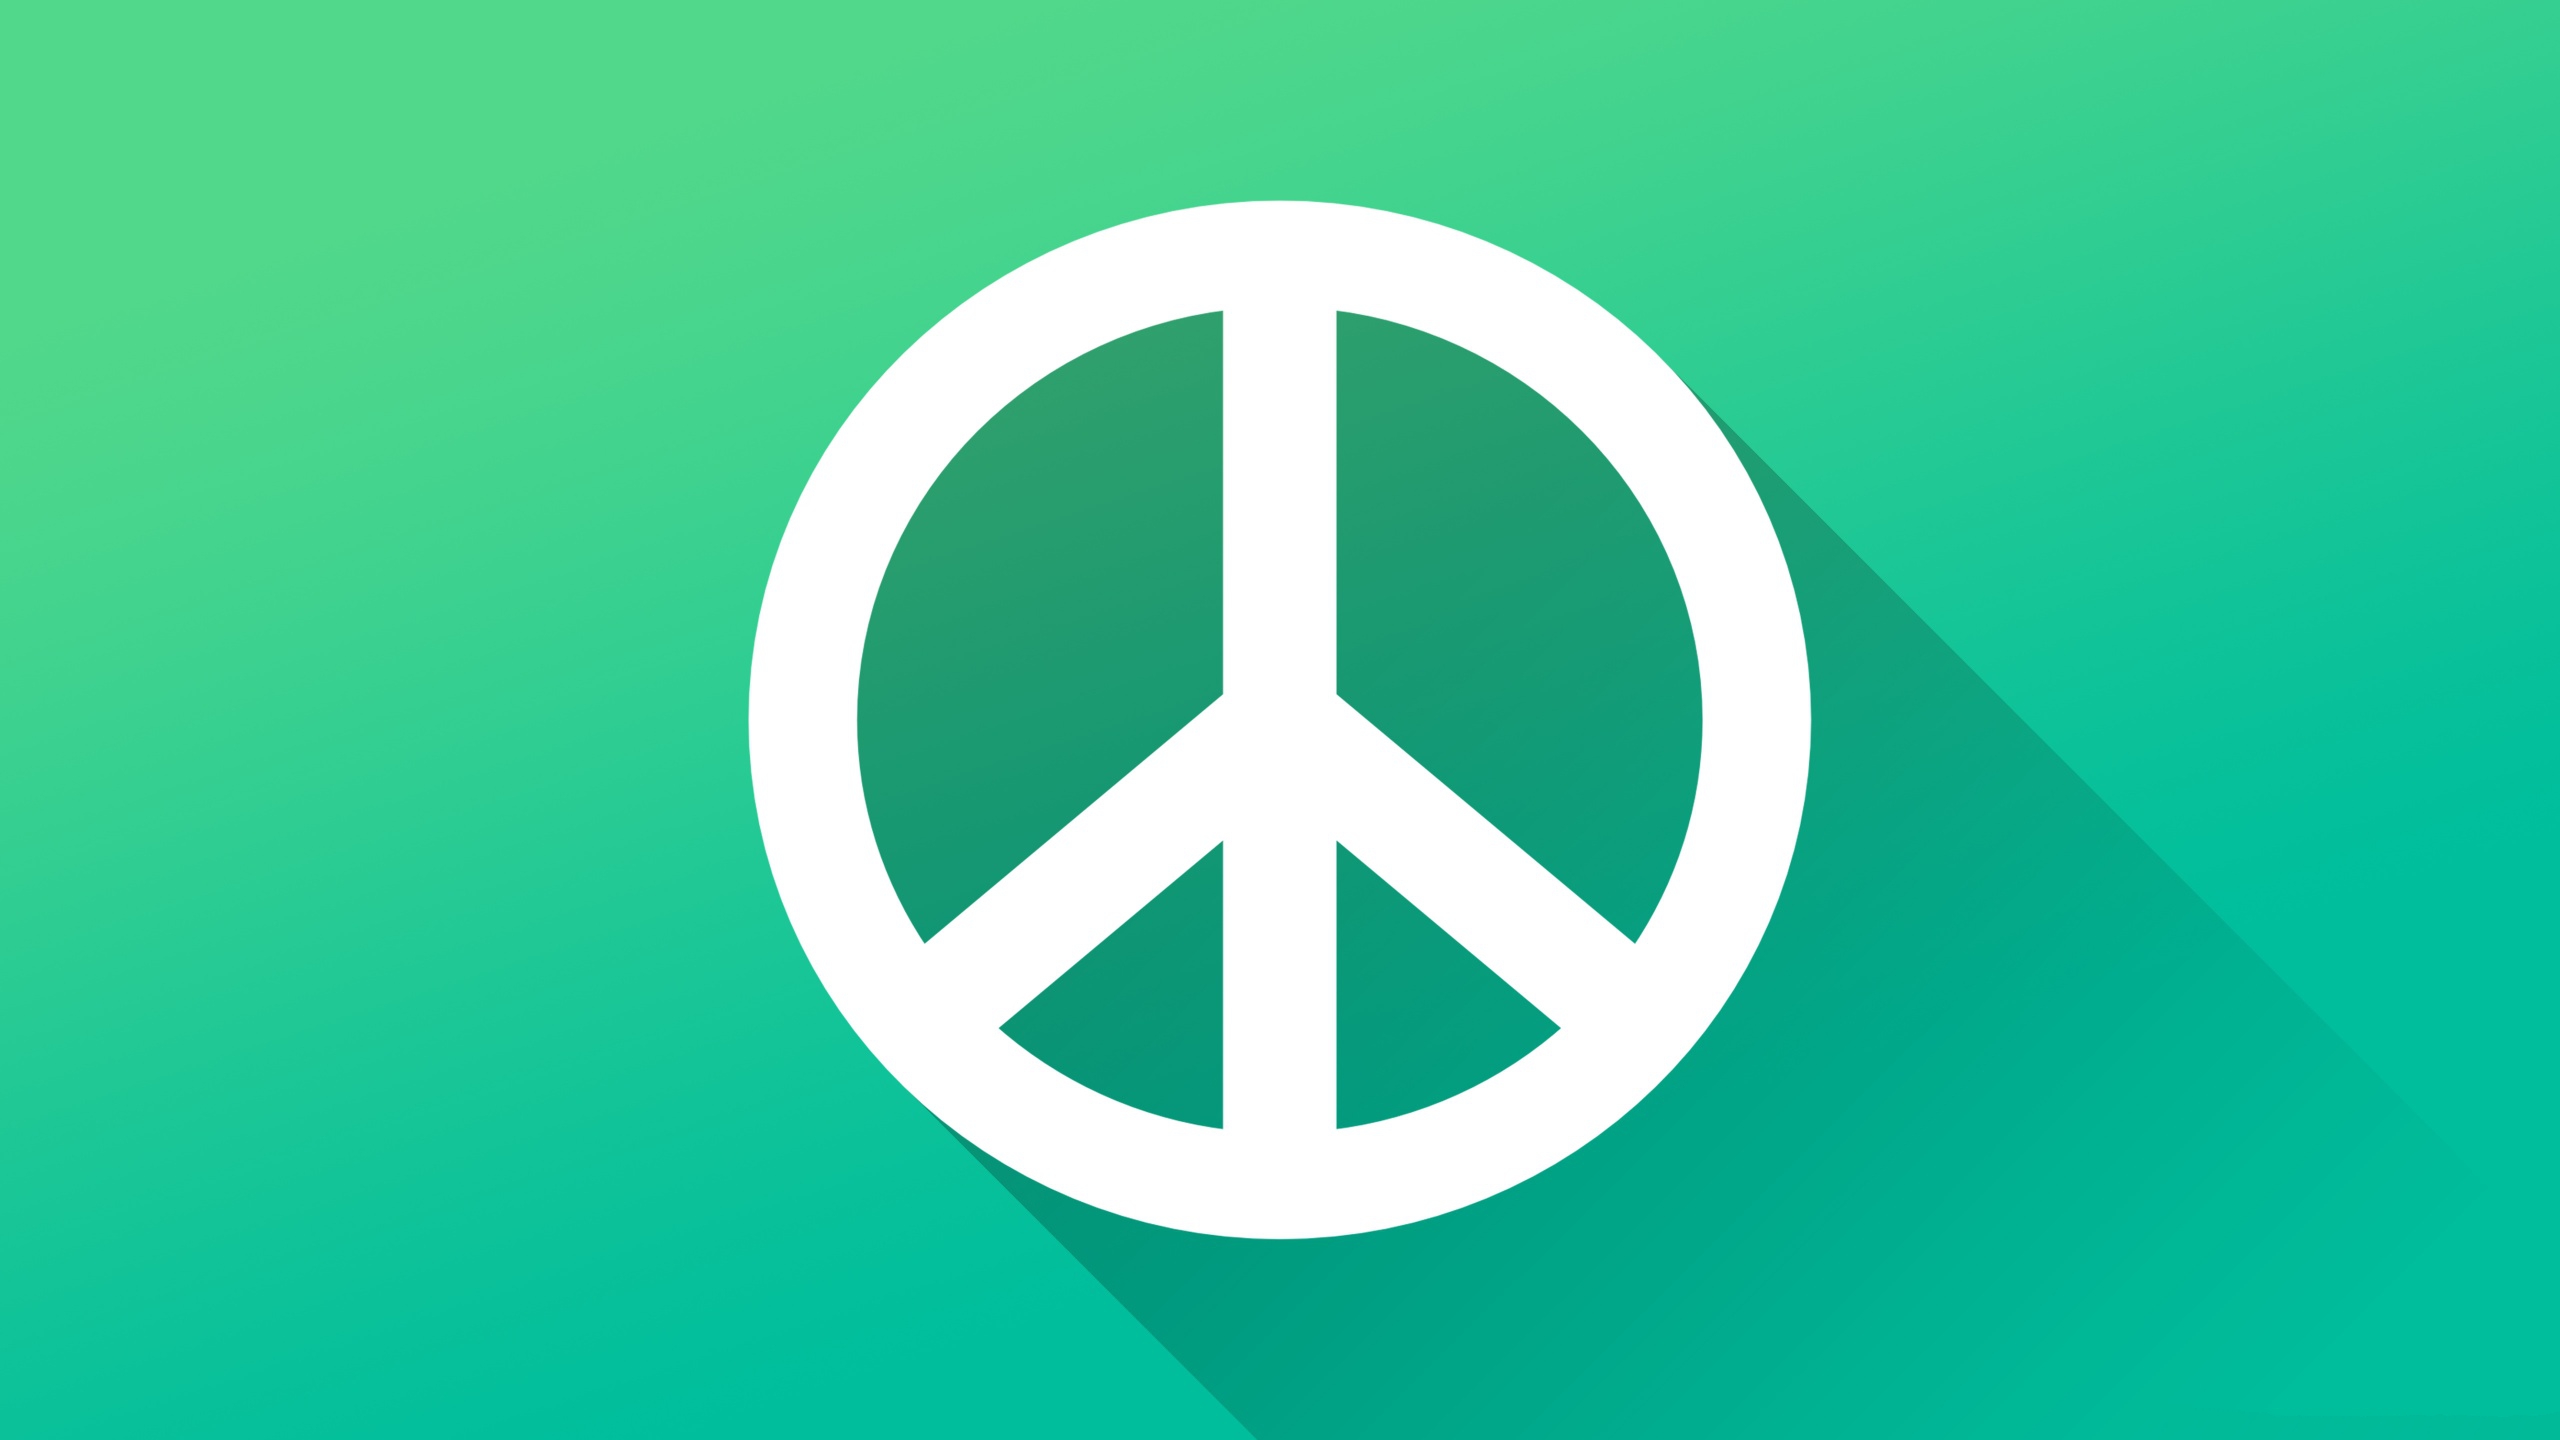 fond d'écran de paix,vert,turquoise,symbole,symboles de paix,police de caractère